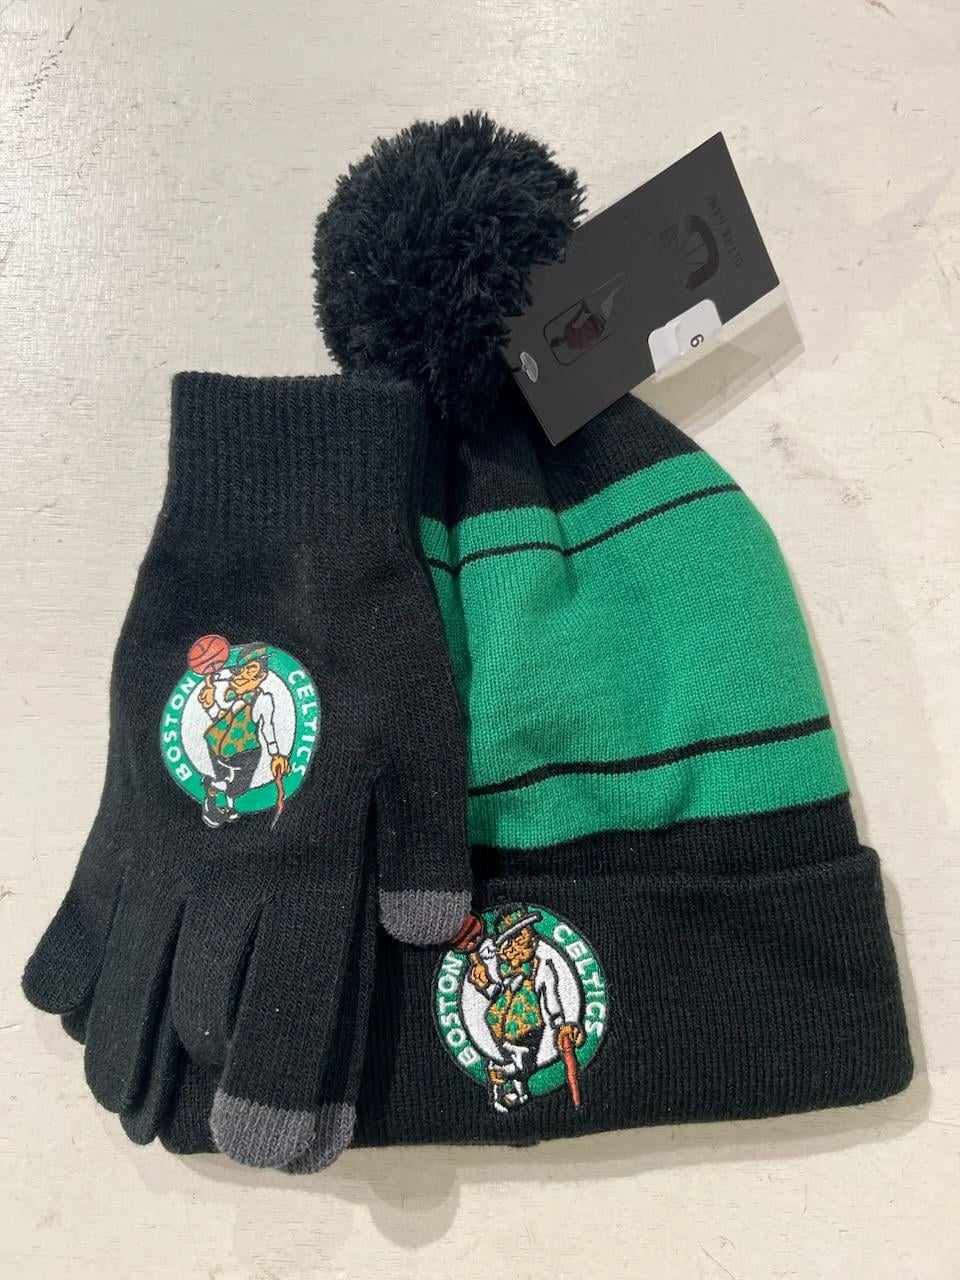 Boston Celtics Winter Hat & Gloves Gift Set